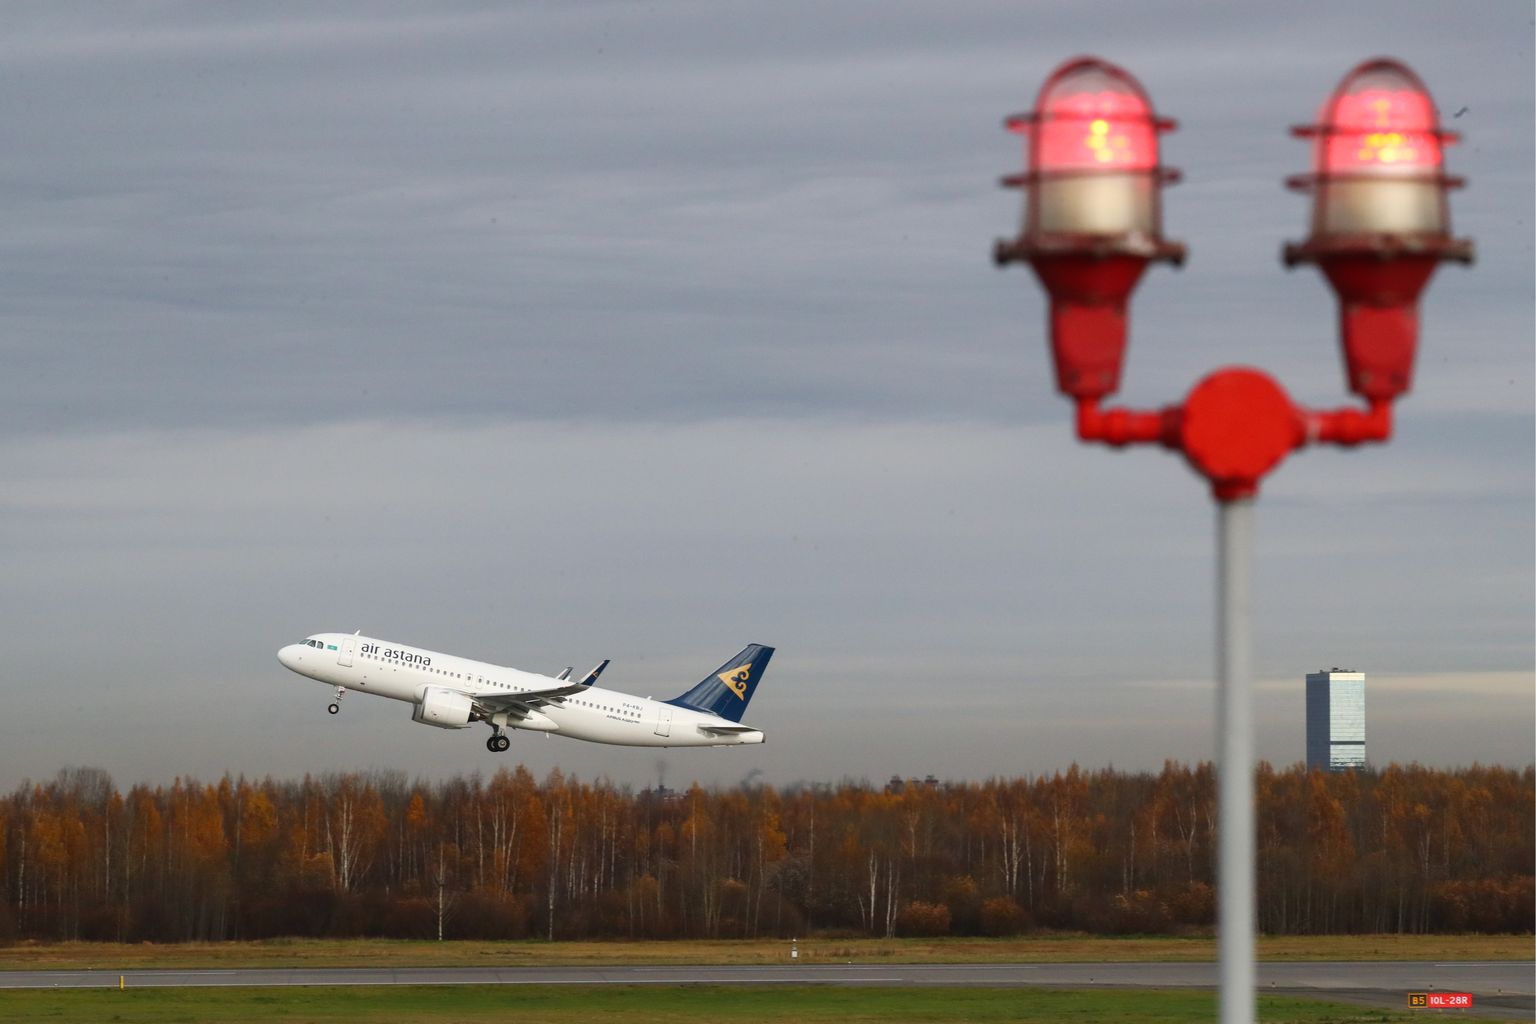 Пассажирский самолет Airbus A320 авиакомпании Air Astana взлетает в международном аэропорту Санкт-Петербурга Пулково.